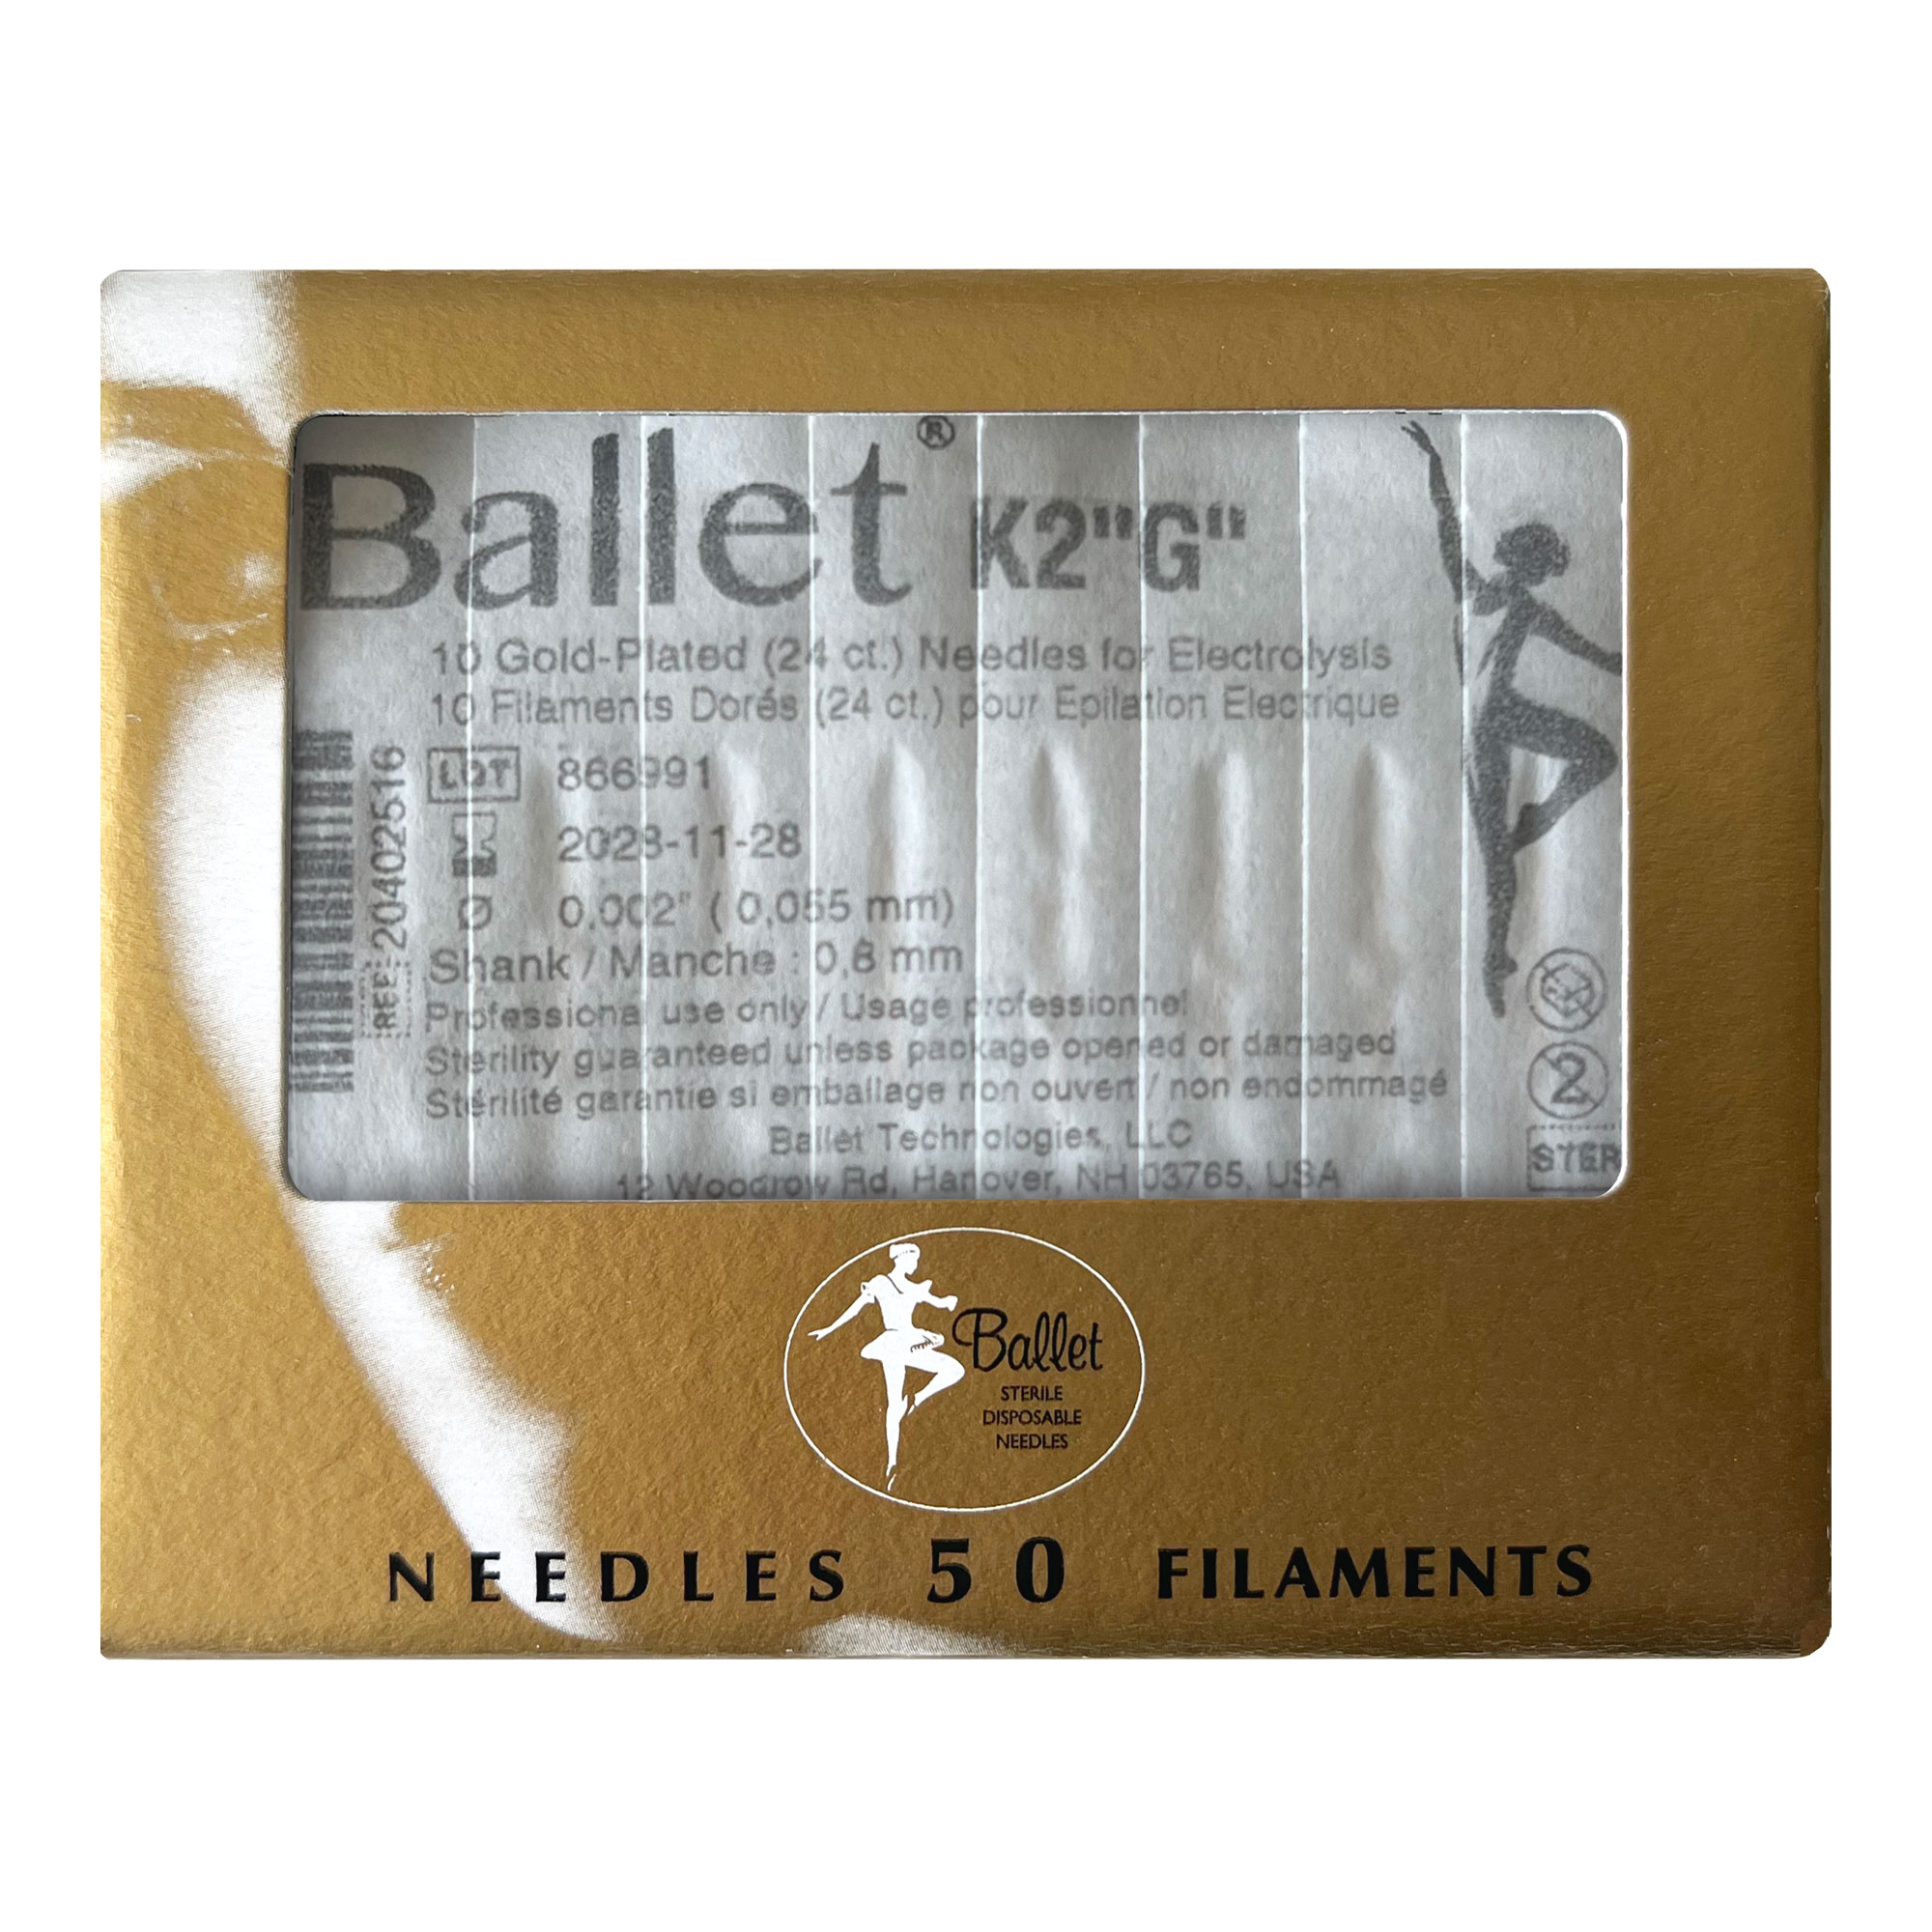 Sterile 24K gold-plated Ballet needles for epilation 0.055 mm